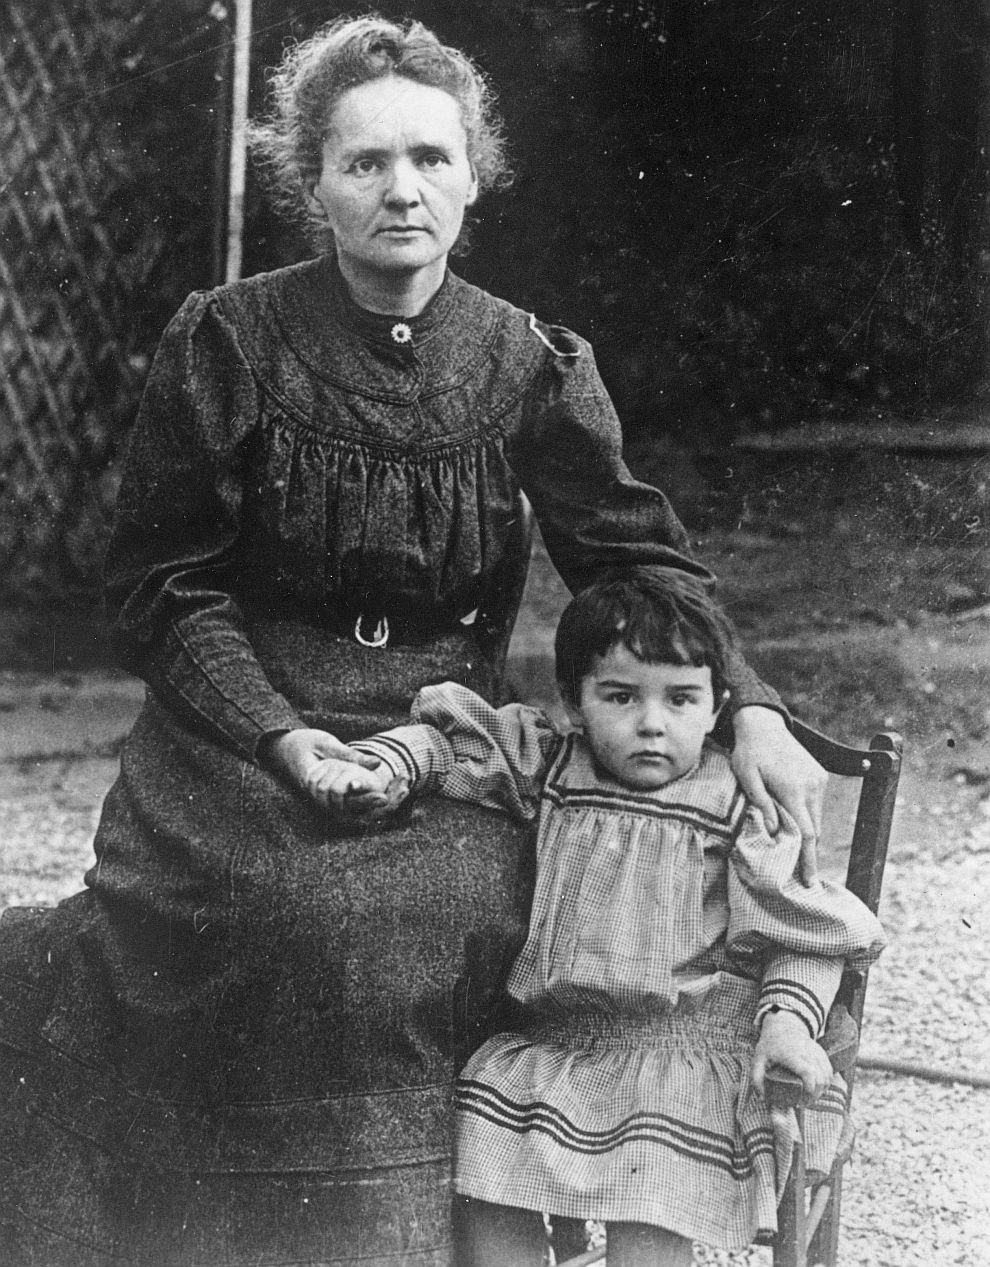 През 1935 г. с Нобелова награда за химия е отличена дъщеря ѝ Ирен Жолио-Кюри, съвместно със съпруга си Фредерик Жолио-Кюри.